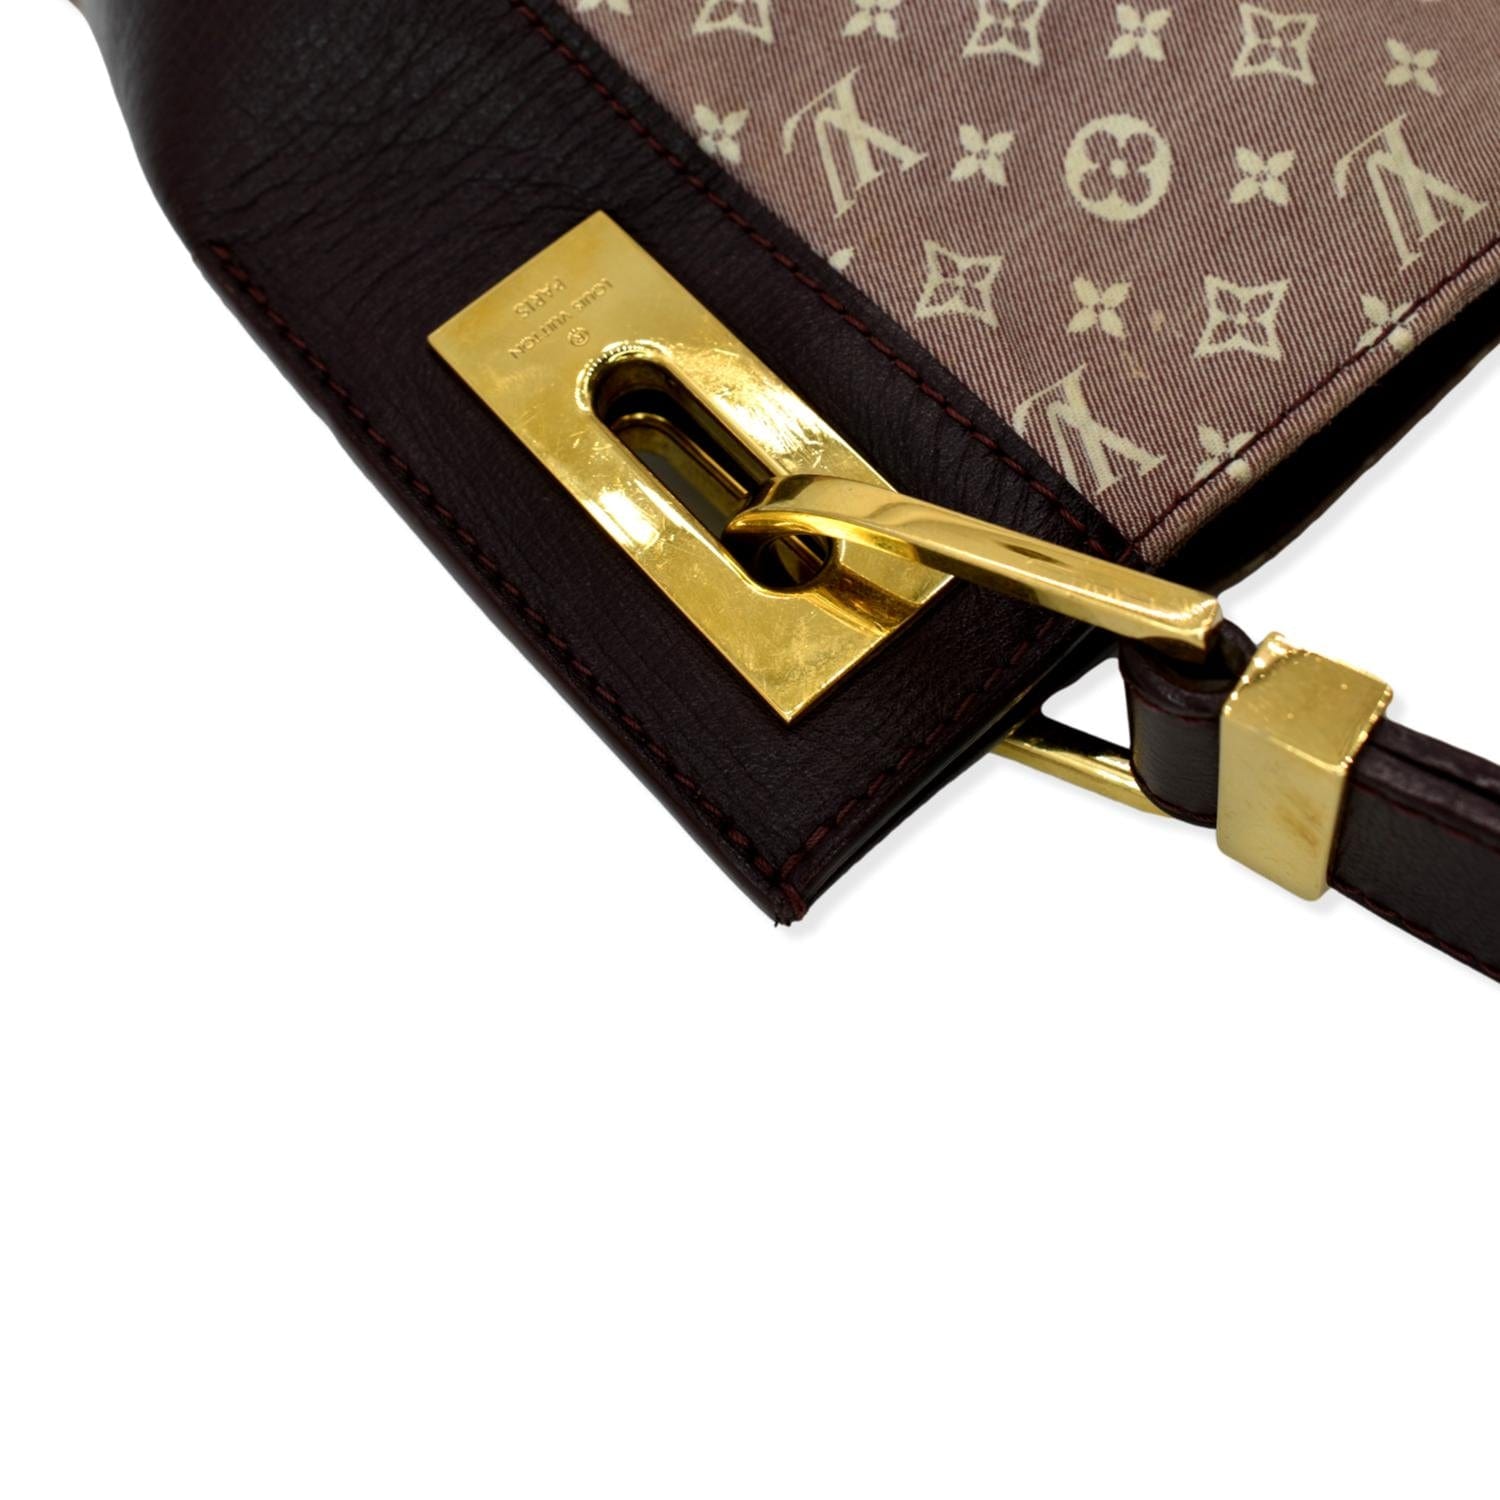 Louis Vuitton - Authenticated Idylle Rendez-Vous Handbag - Cloth Brown for Women, Good Condition